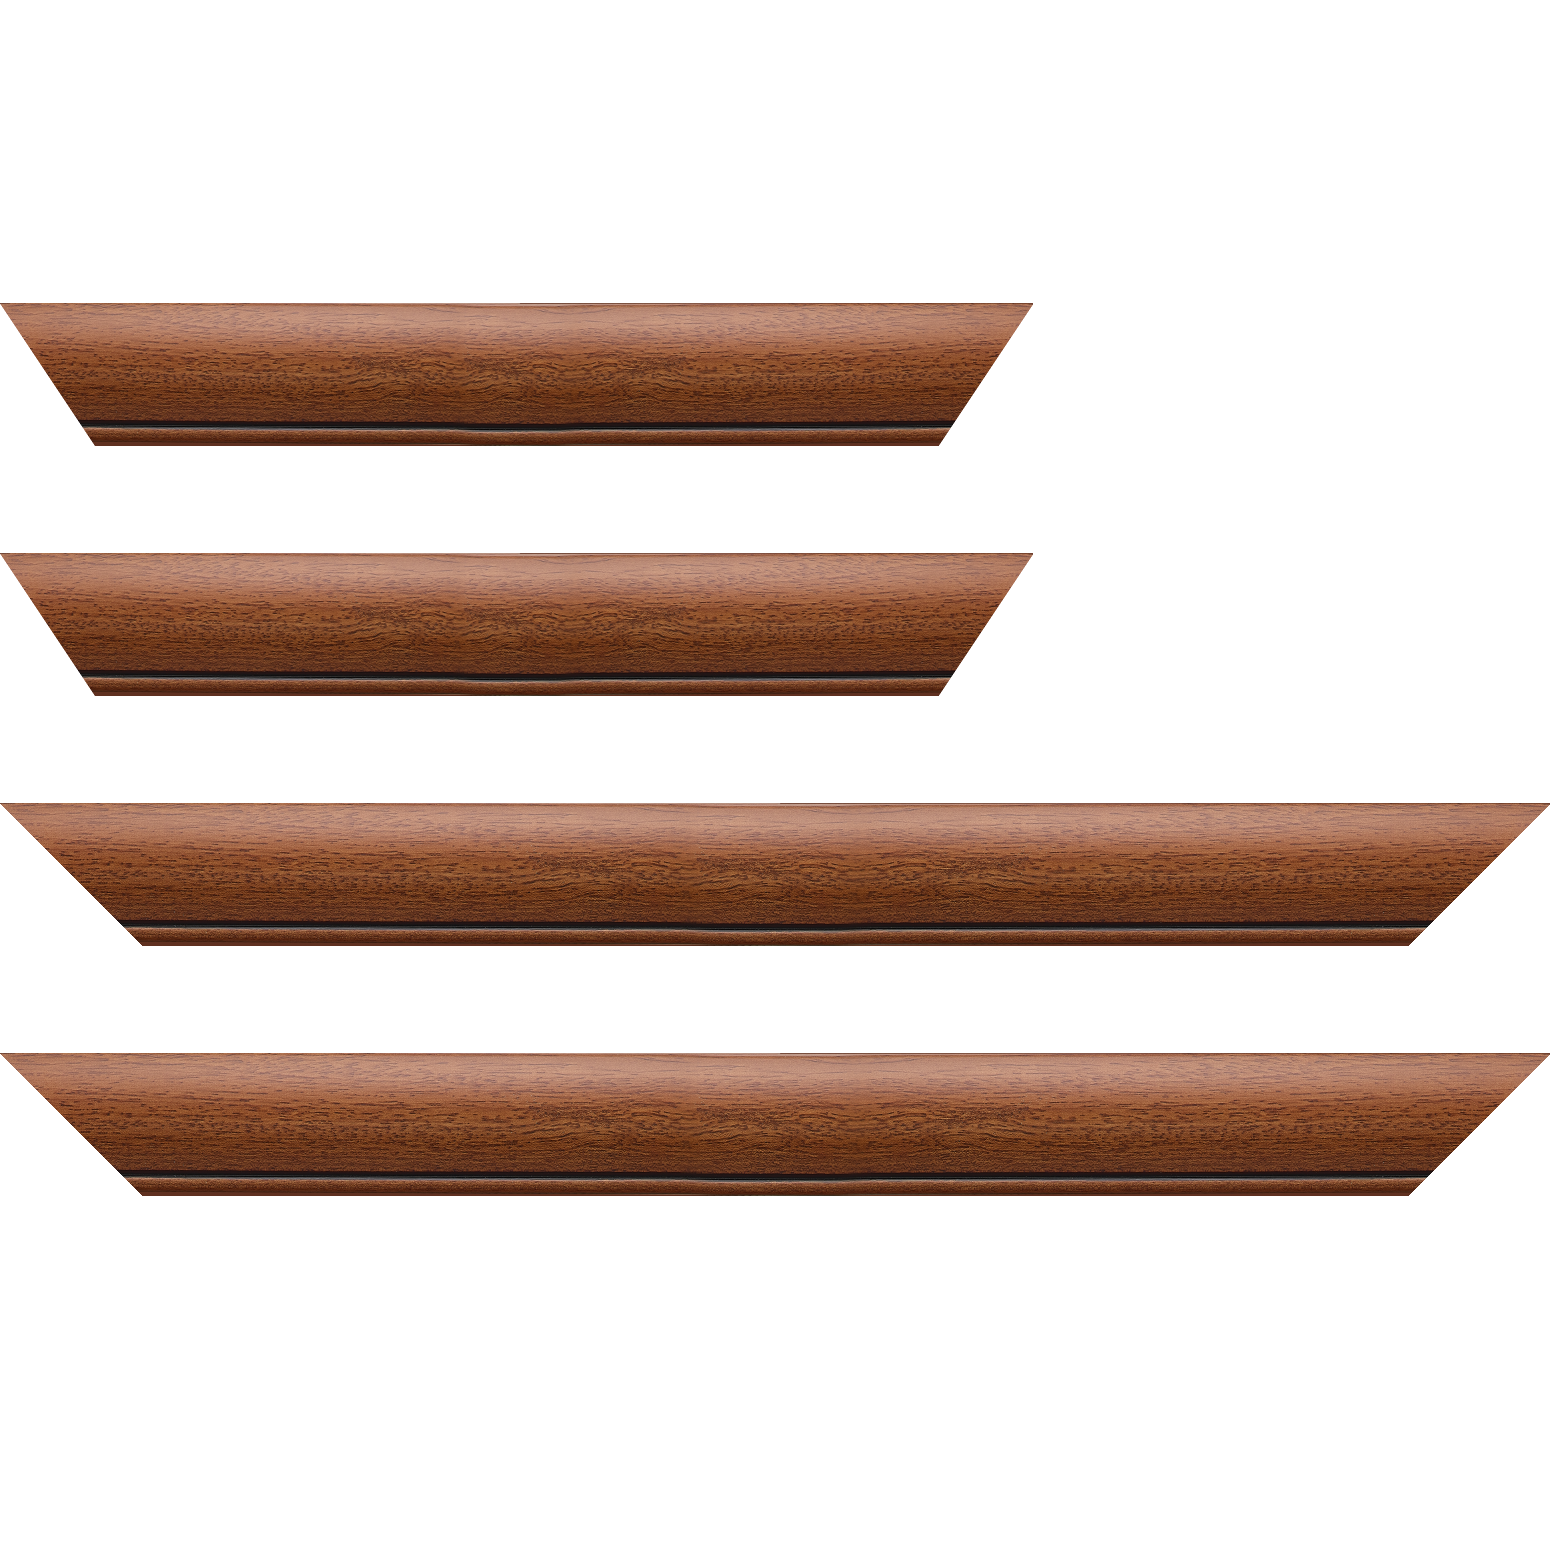 Baguette bois profil arrondi largeur 4.7cm couleur marron ton bois satiné rehaussé d'un filet noir - 34x40